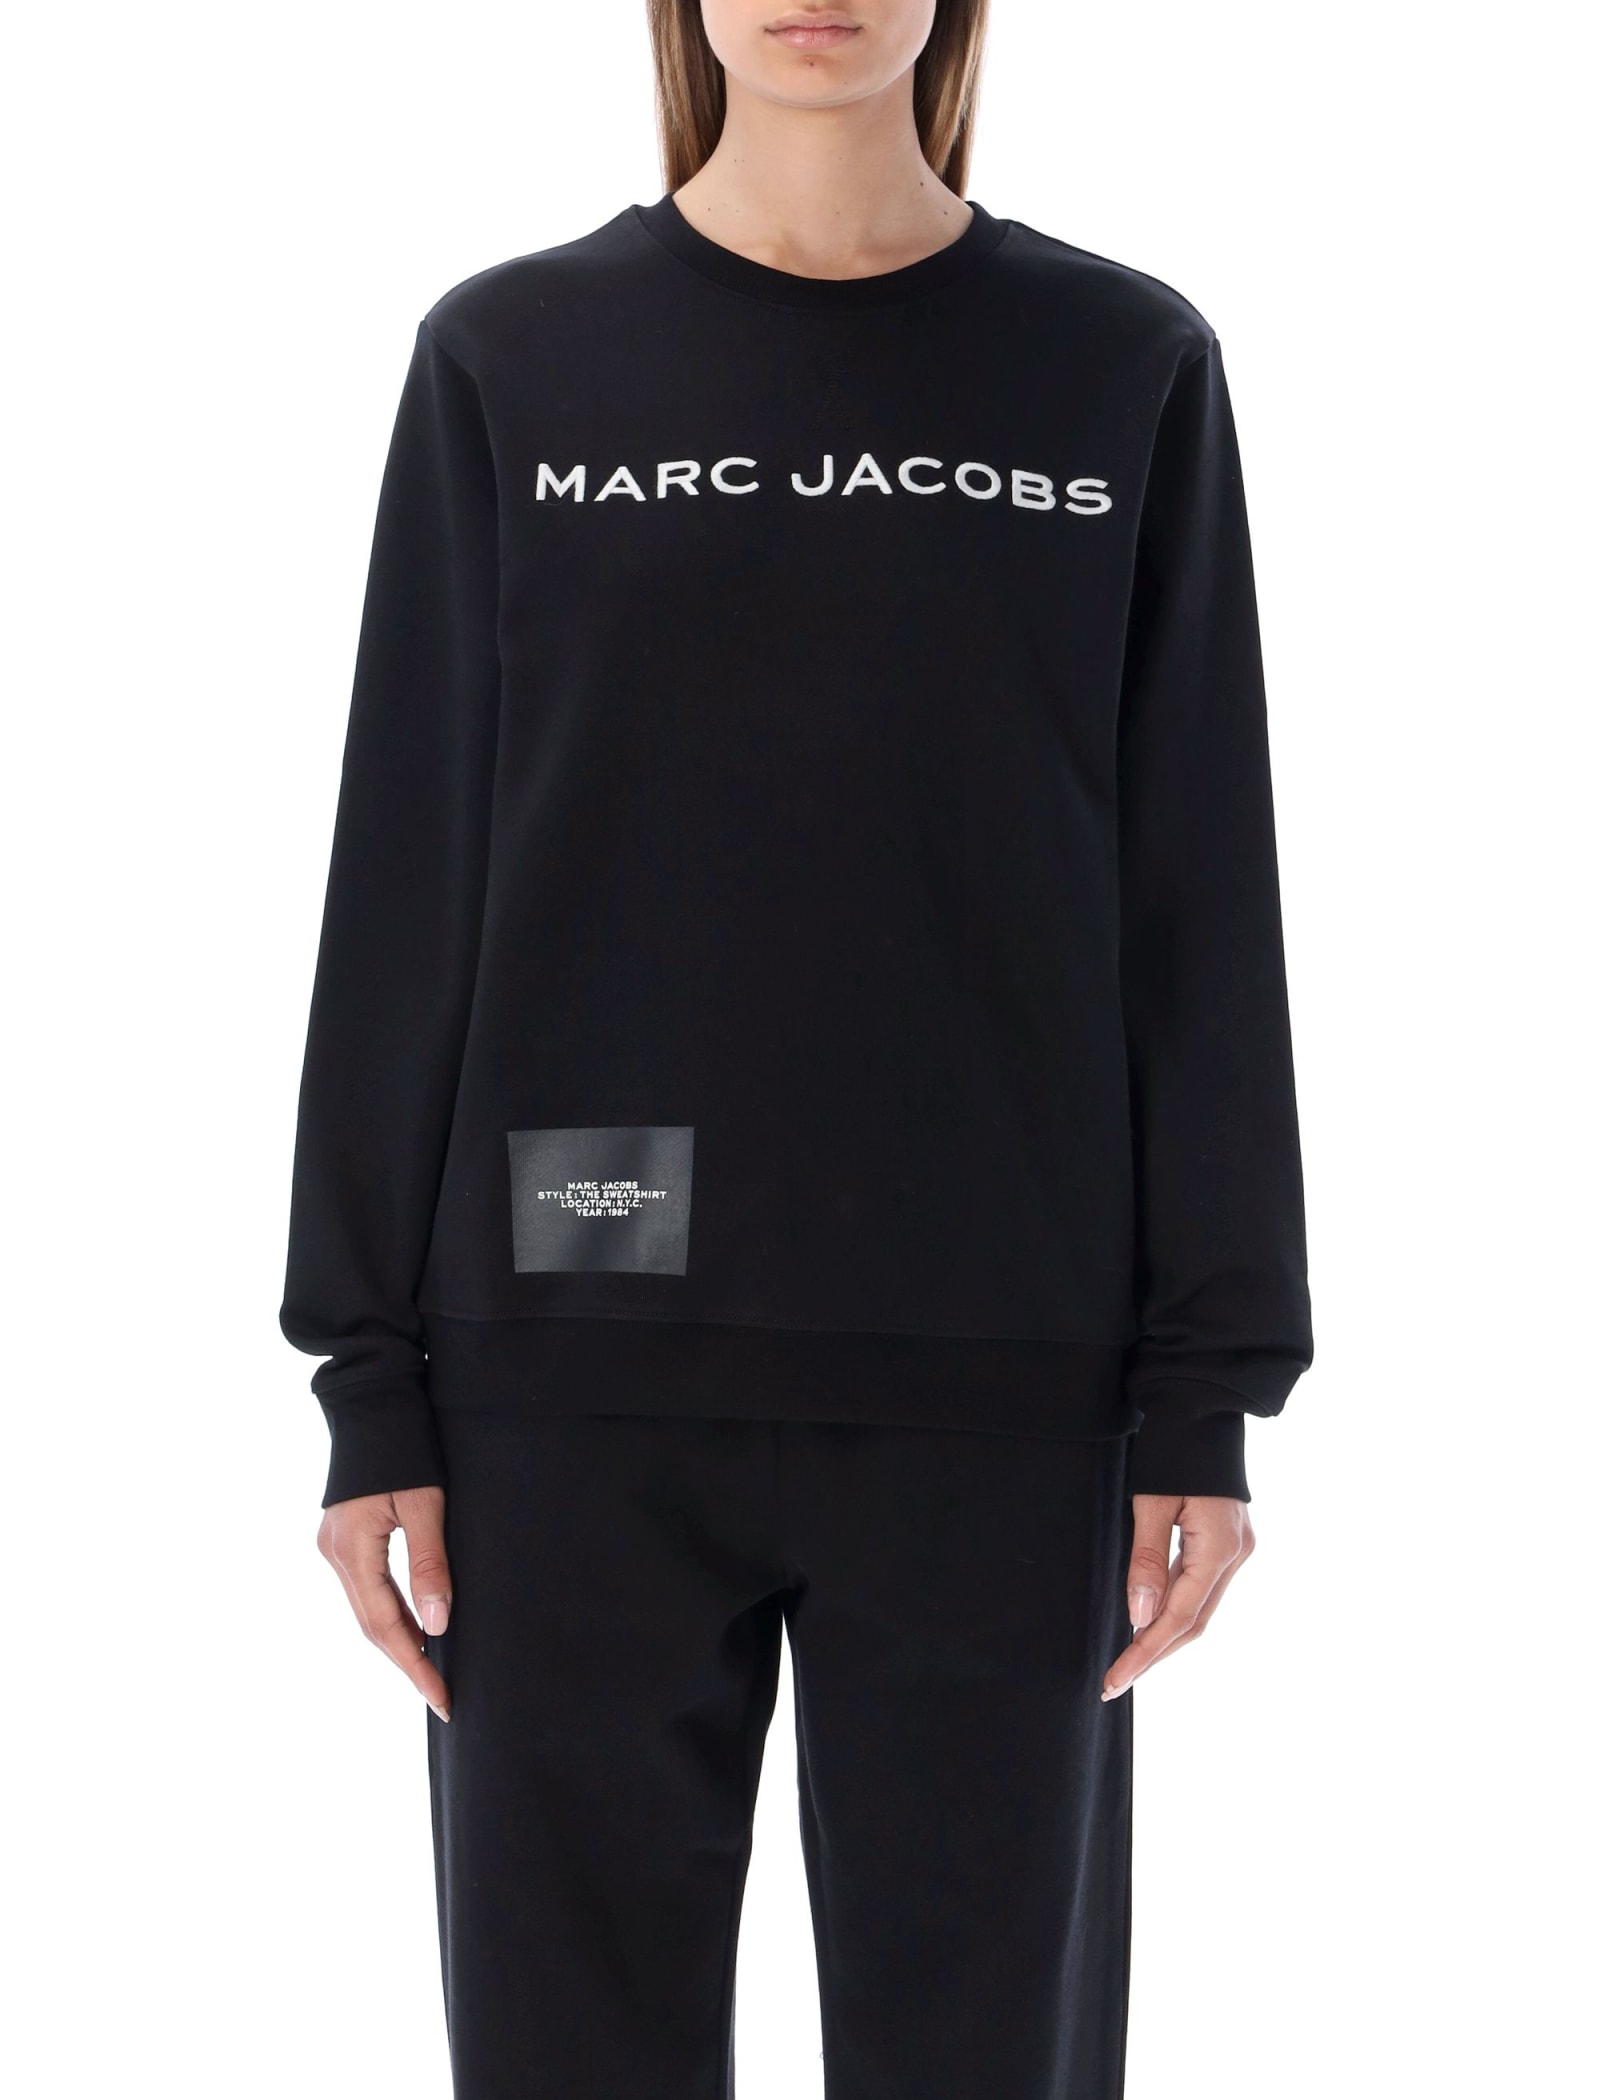 Marc Jacobs The Sweatshirt